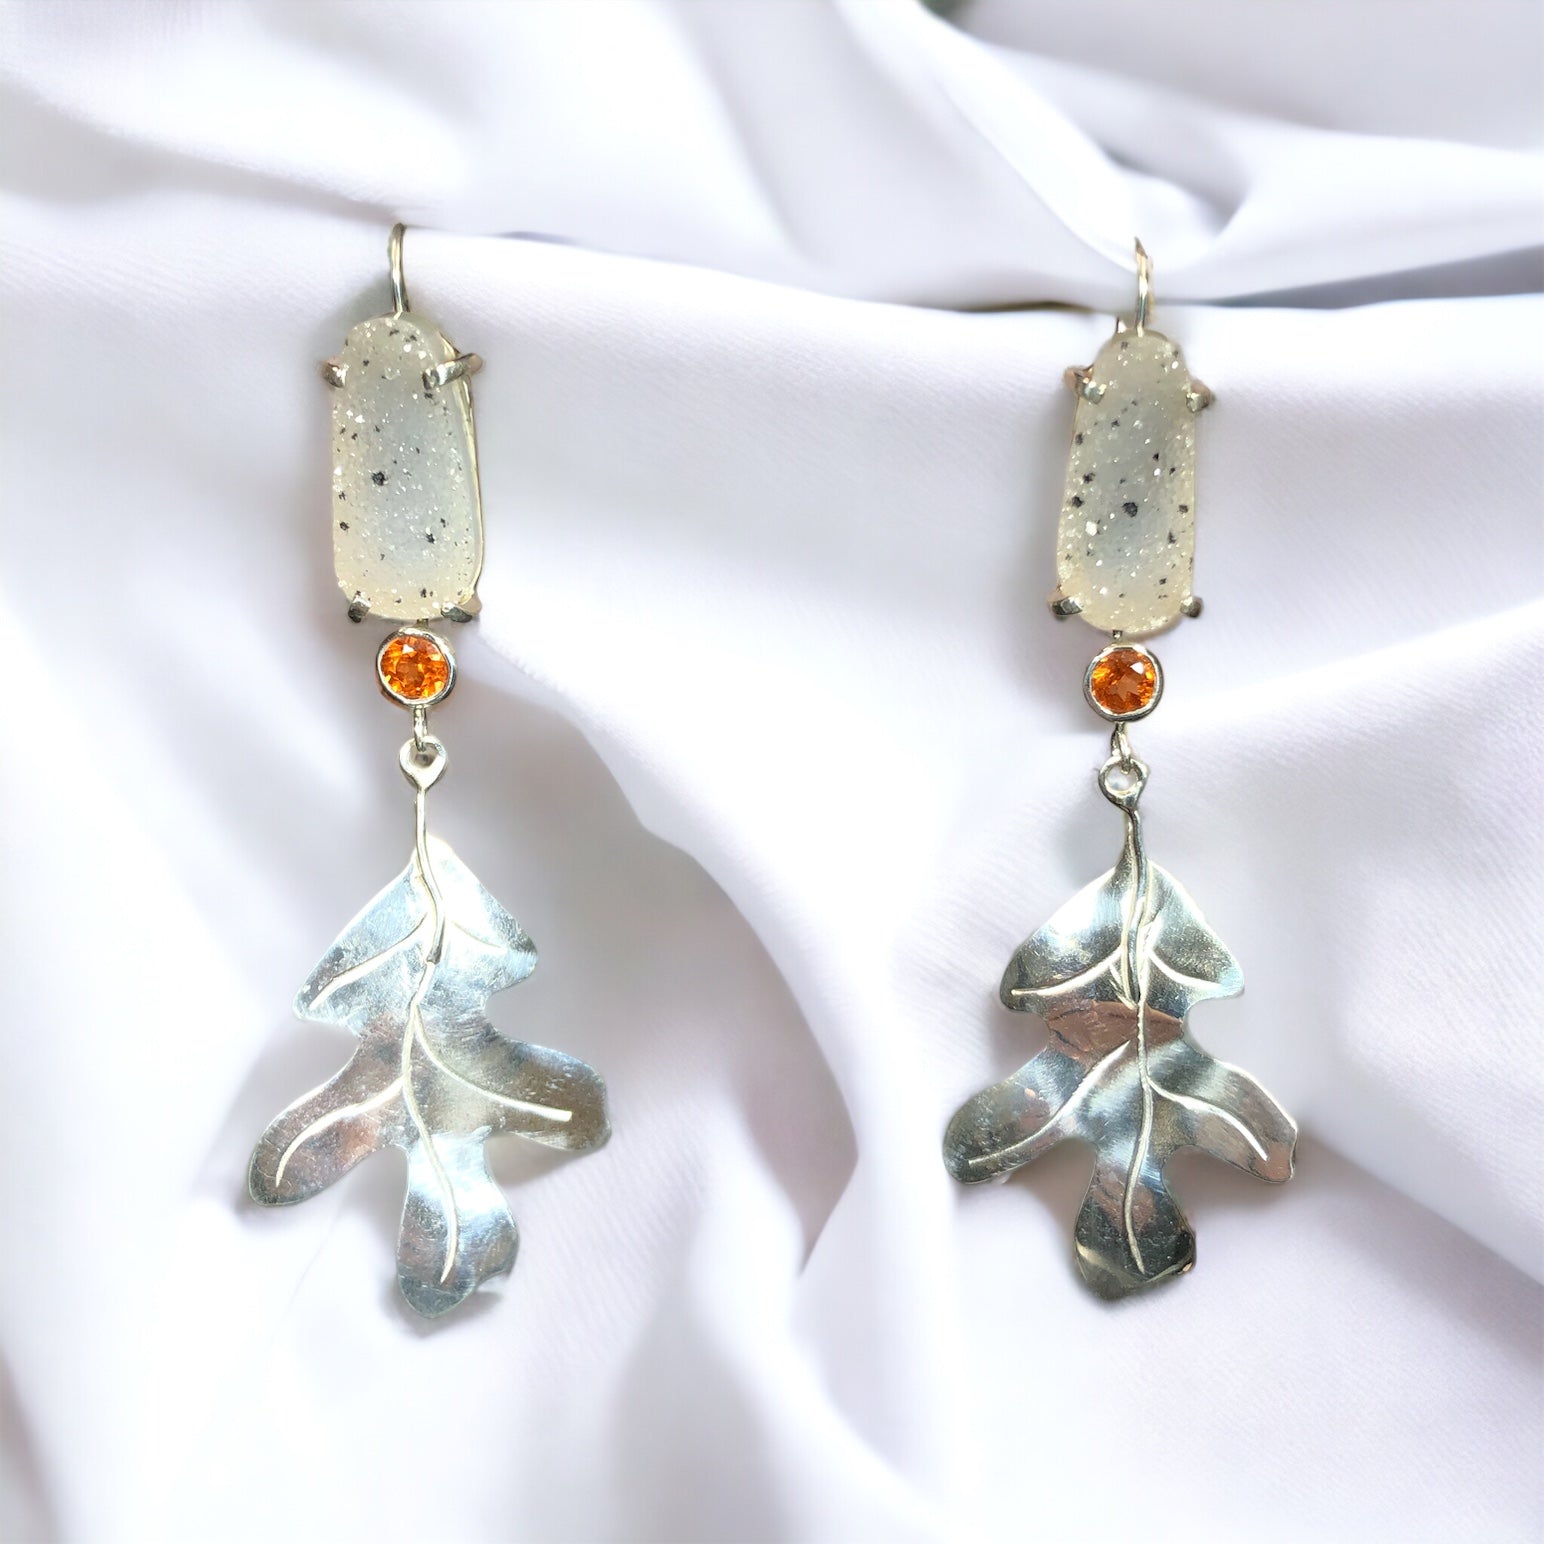 Oak Leaf Earrings w/ Drusy Quartz & Spessartine Garnets